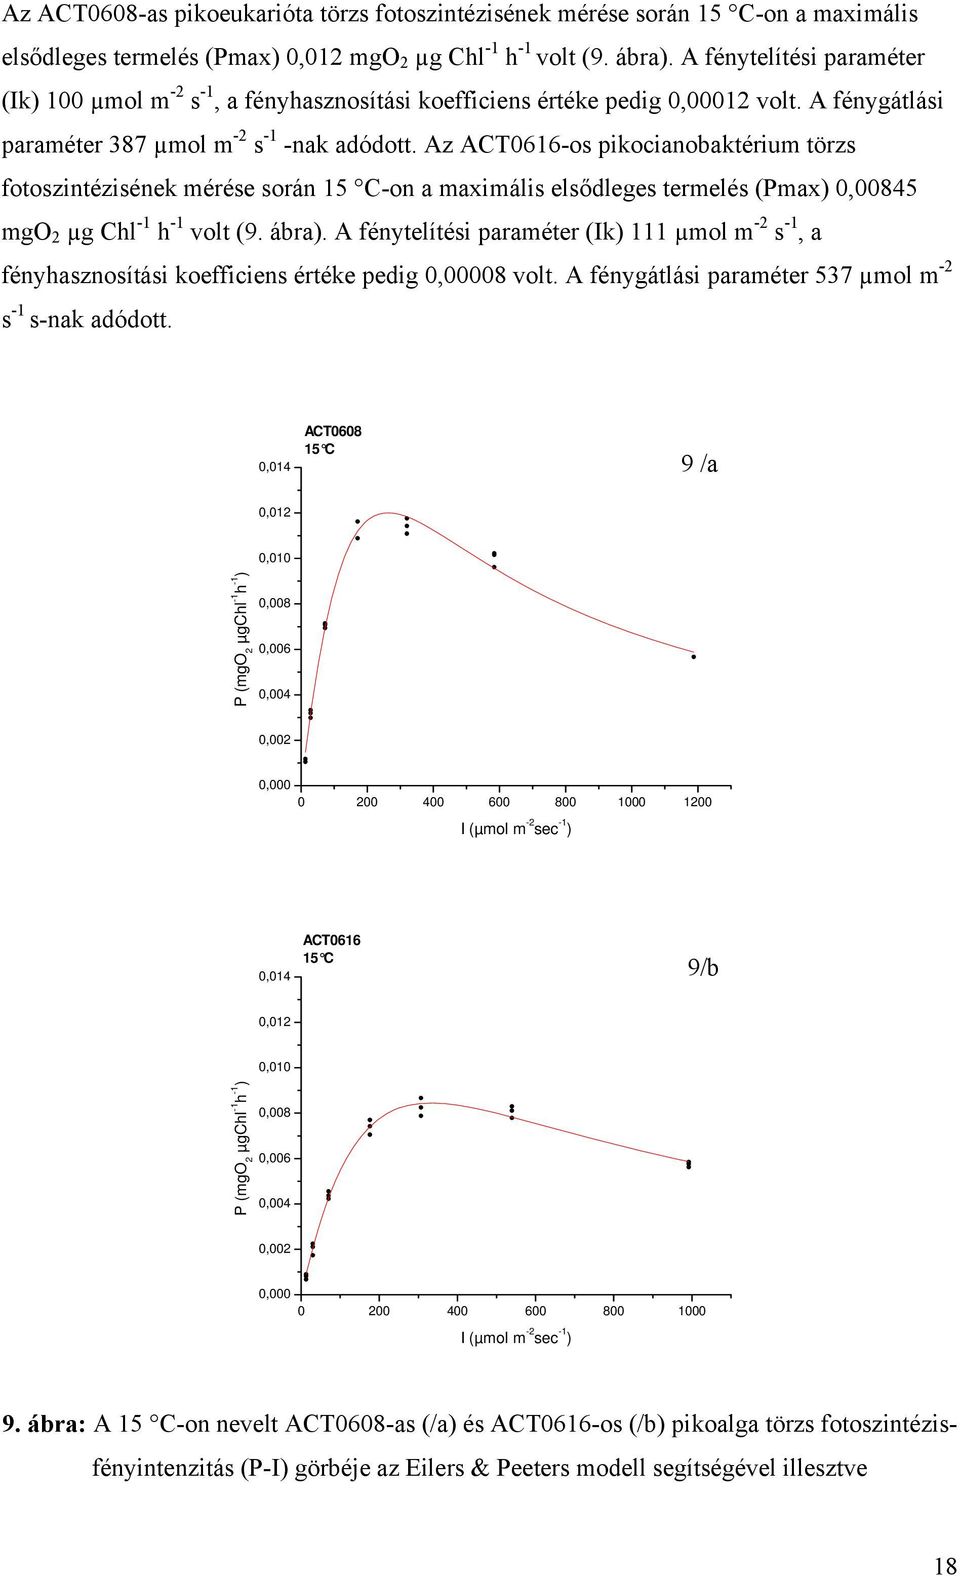 Az ACT0616-os pikocianobaktérium törzs fotoszintézisének mérése során 15 C-on a maximális elsődleges termelés (Pmax) 0,00845 mgo 2 µg Chl -1 h -1 volt (9. ábra).